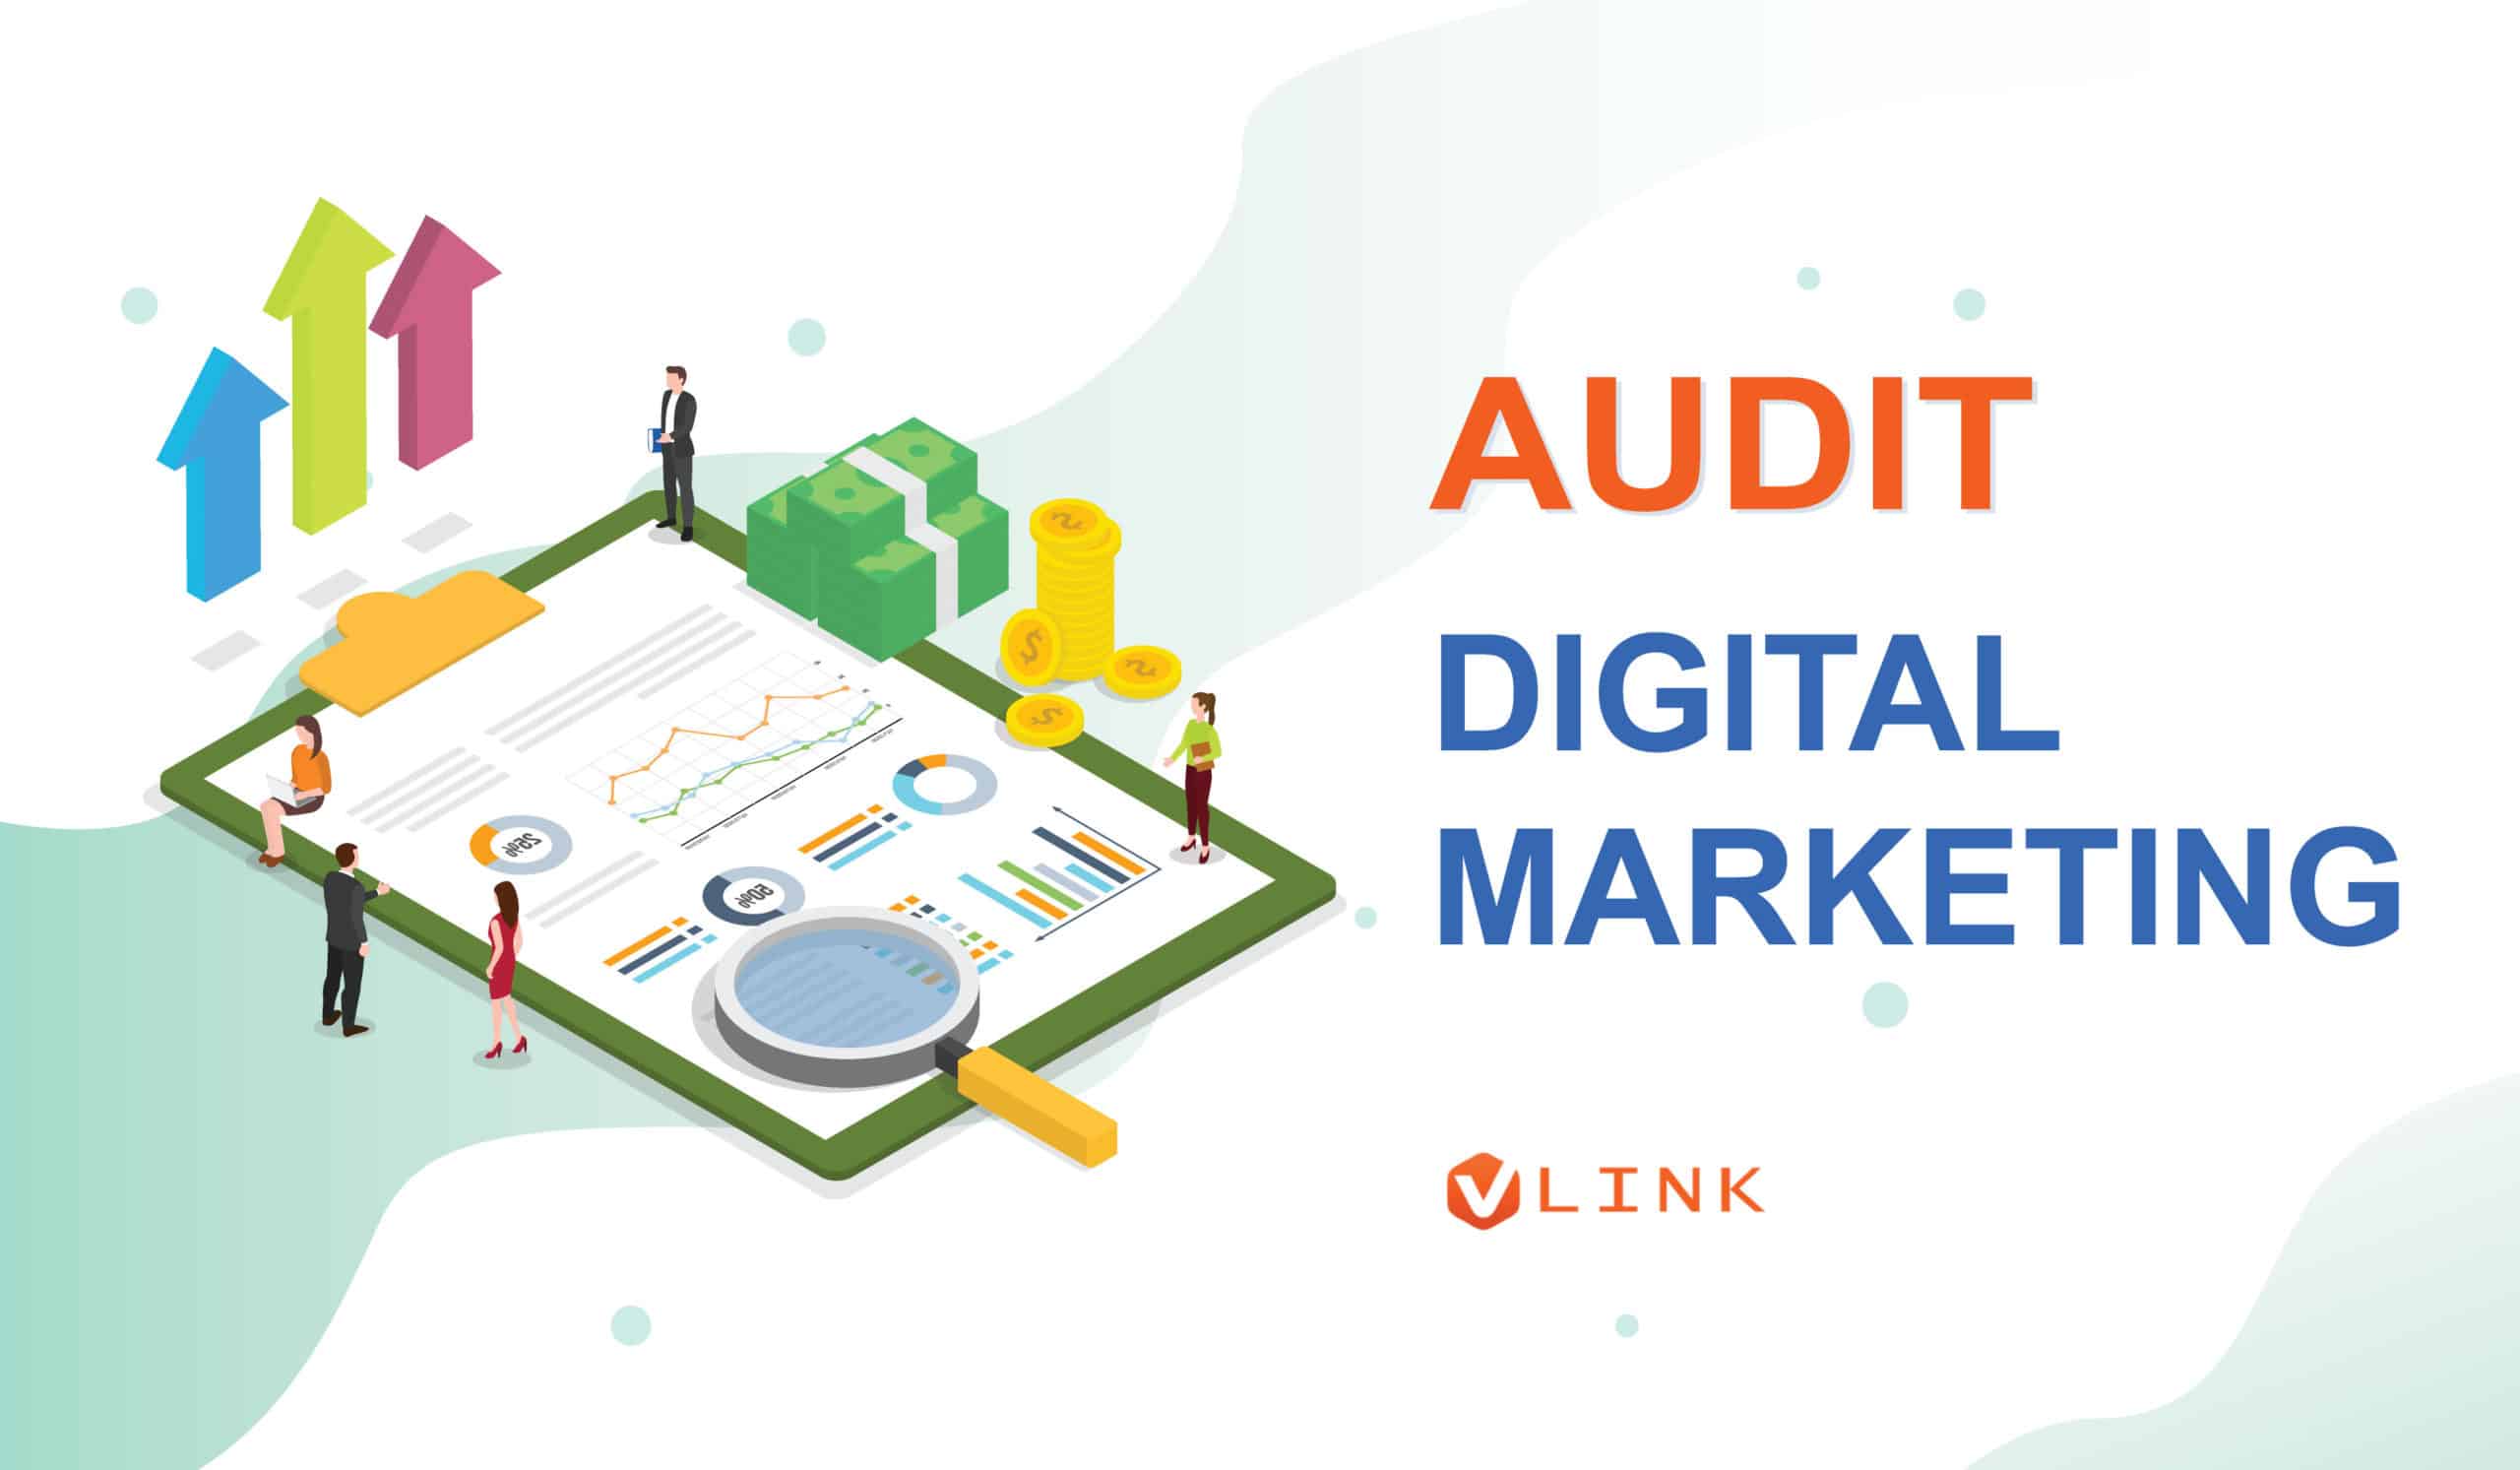 Audit Digital Marketing VLINK